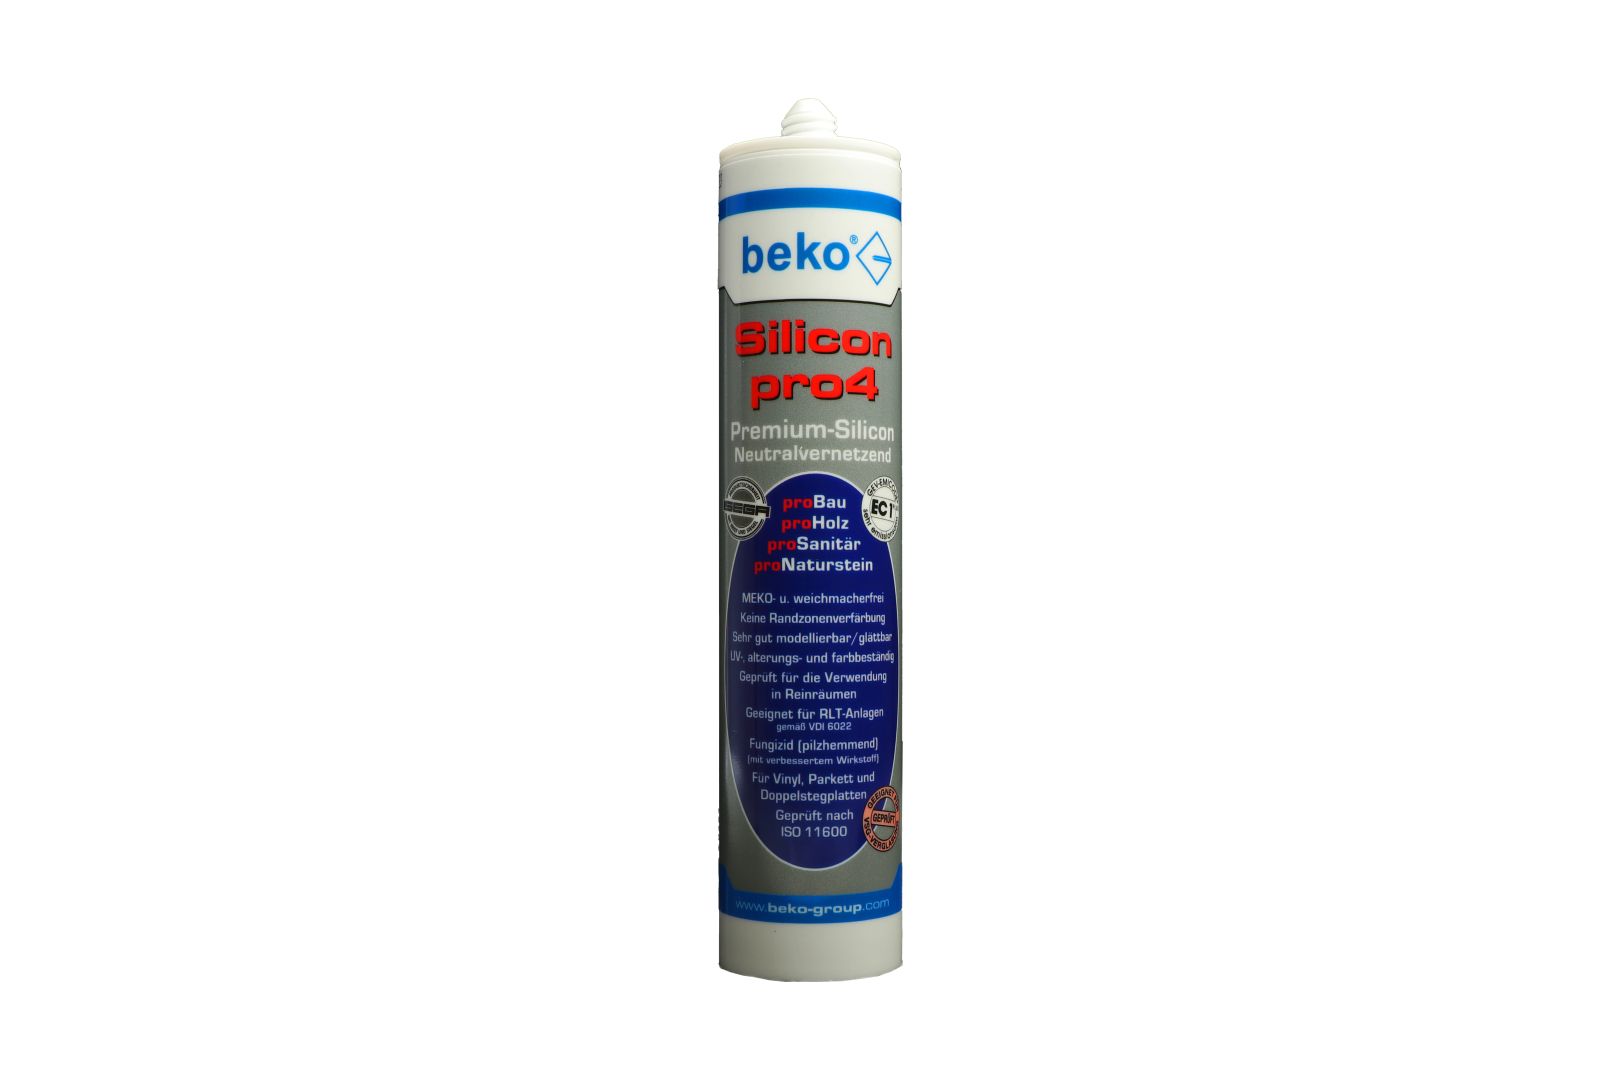 beko Silicon pro4, Premium-Silicon, Silikon-Dichtstoff, neutralvernetzend, grautransparent, 310 ml